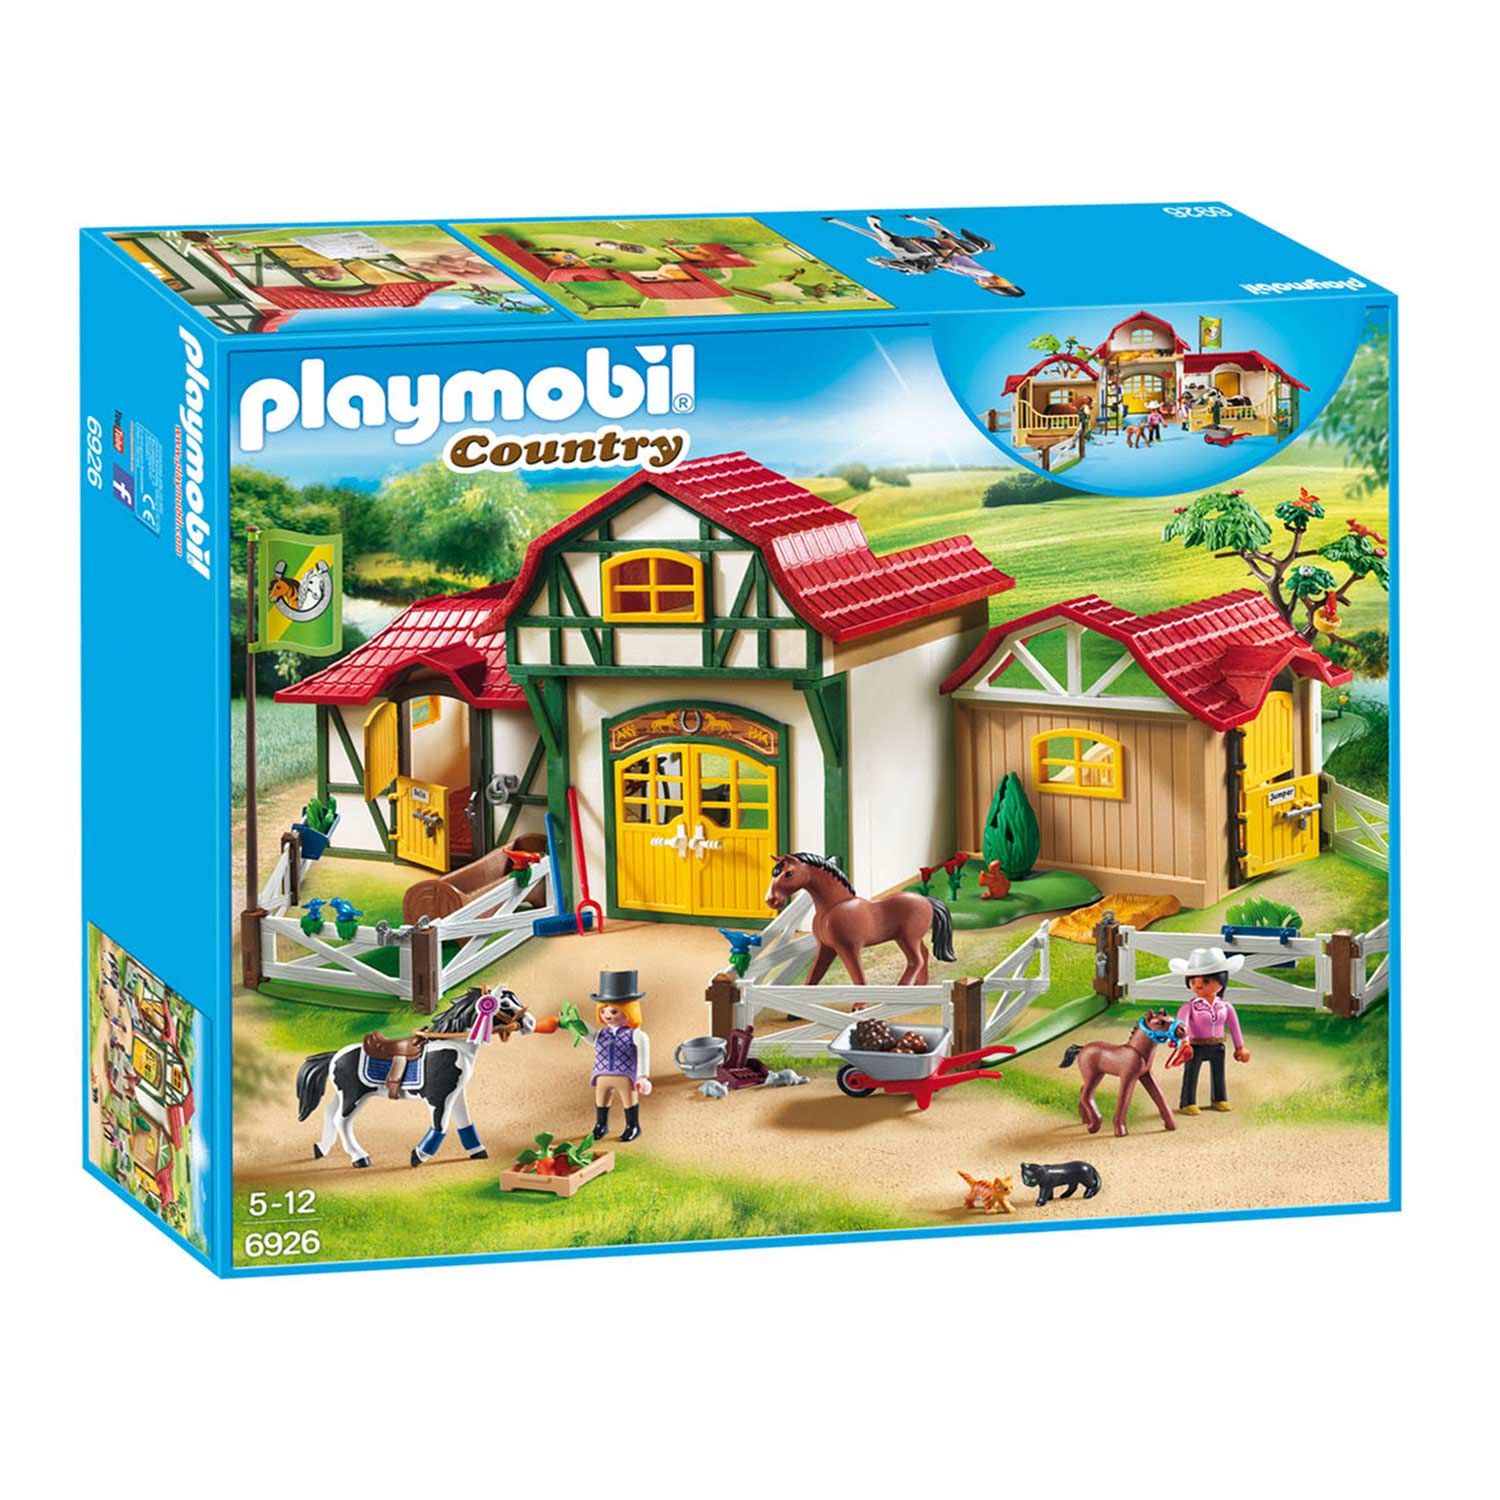 Playmobil - Country 71239 Cavaliers, Chevaux et Pique-Nique